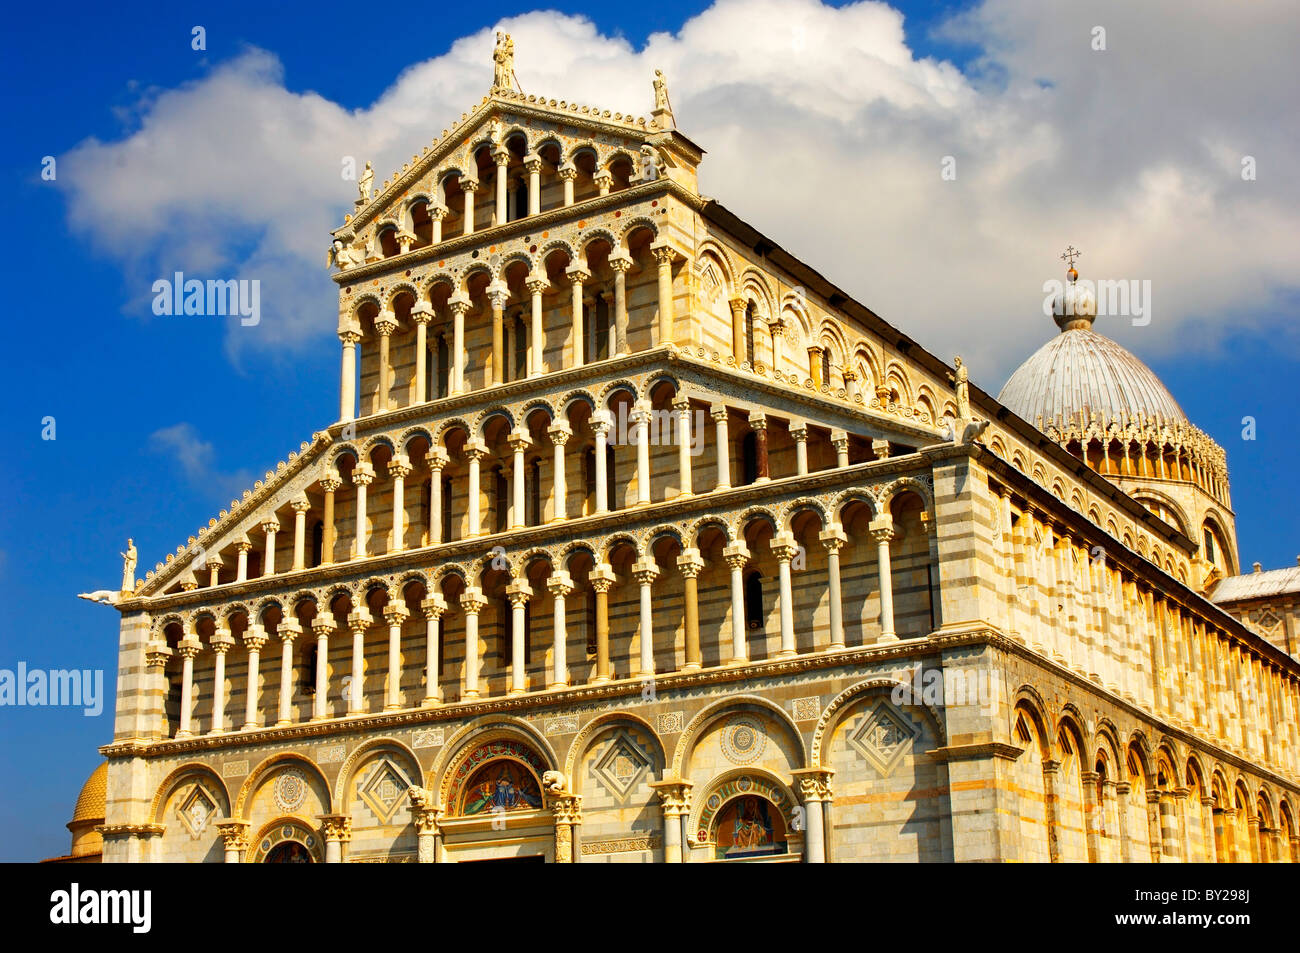 Pisa-Dom oder Catherderal romanischen Fassade Arkaden - Piazza del Miracoli - Pisa - Italien Stockfoto